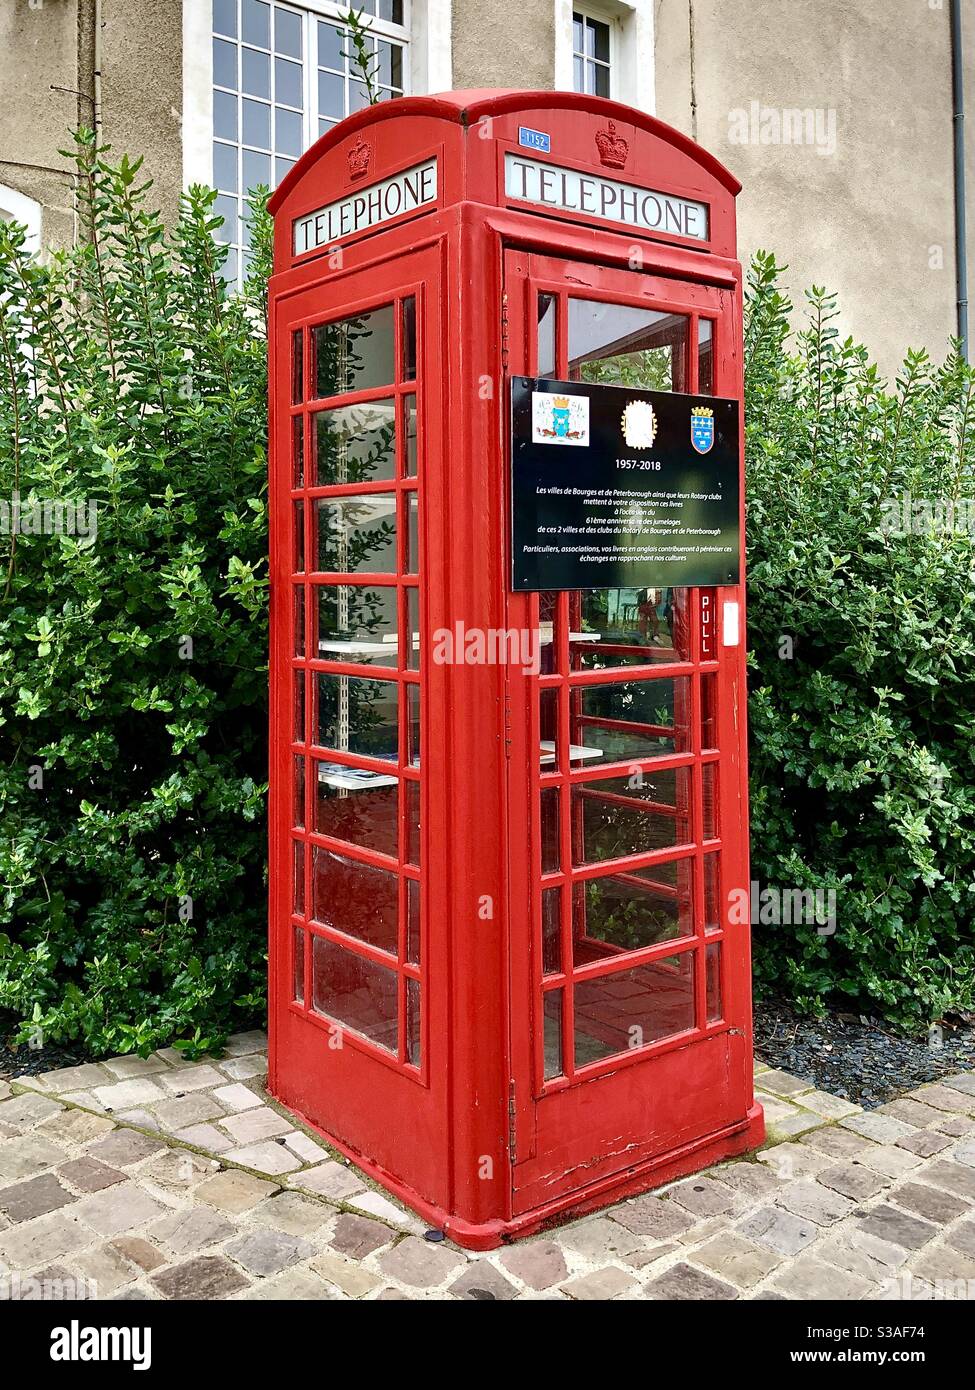 La scatola telefonica rossa britannica è stata convertita in una biblioteca pubblica gratuita installata a Bourges, Cher, Francia, per celebrare il "gemellaggio" con Peterborough, Regno Unito, dal 1957. Foto Stock